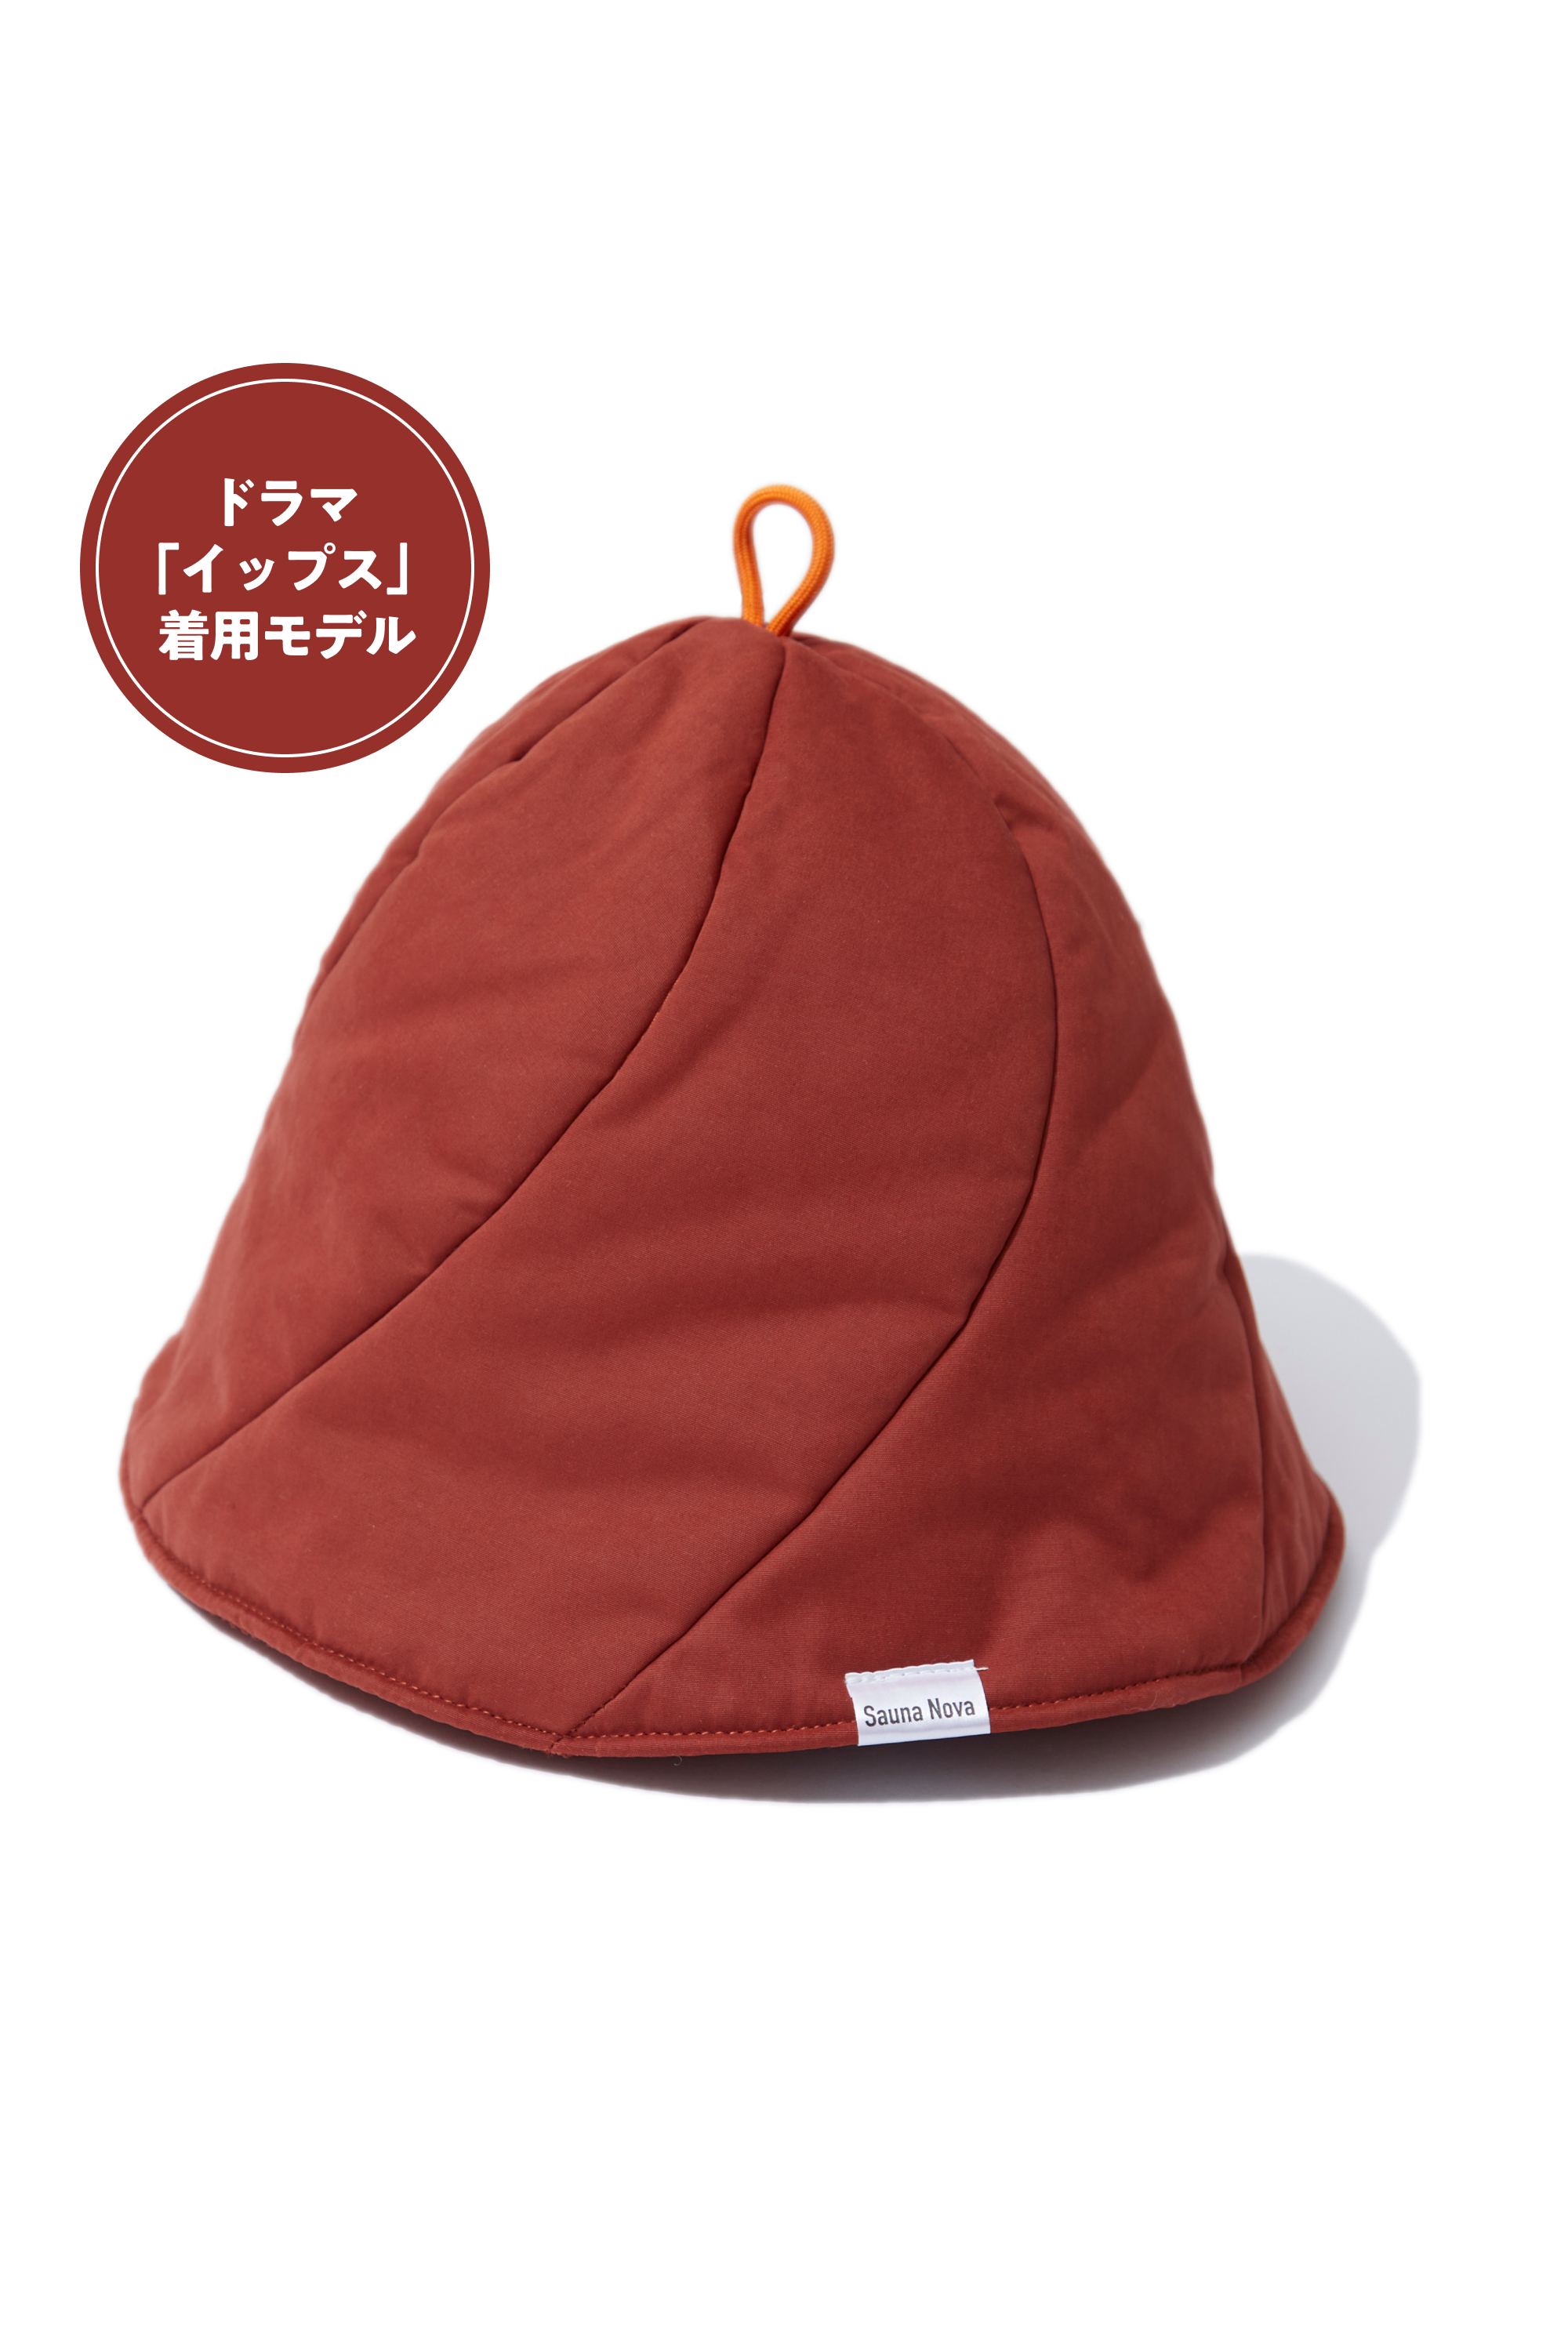 【ドラマ着用モデル】Vaceous Sauna Hat（ヴェイシャスサウナハット） ver.2 オレンジ